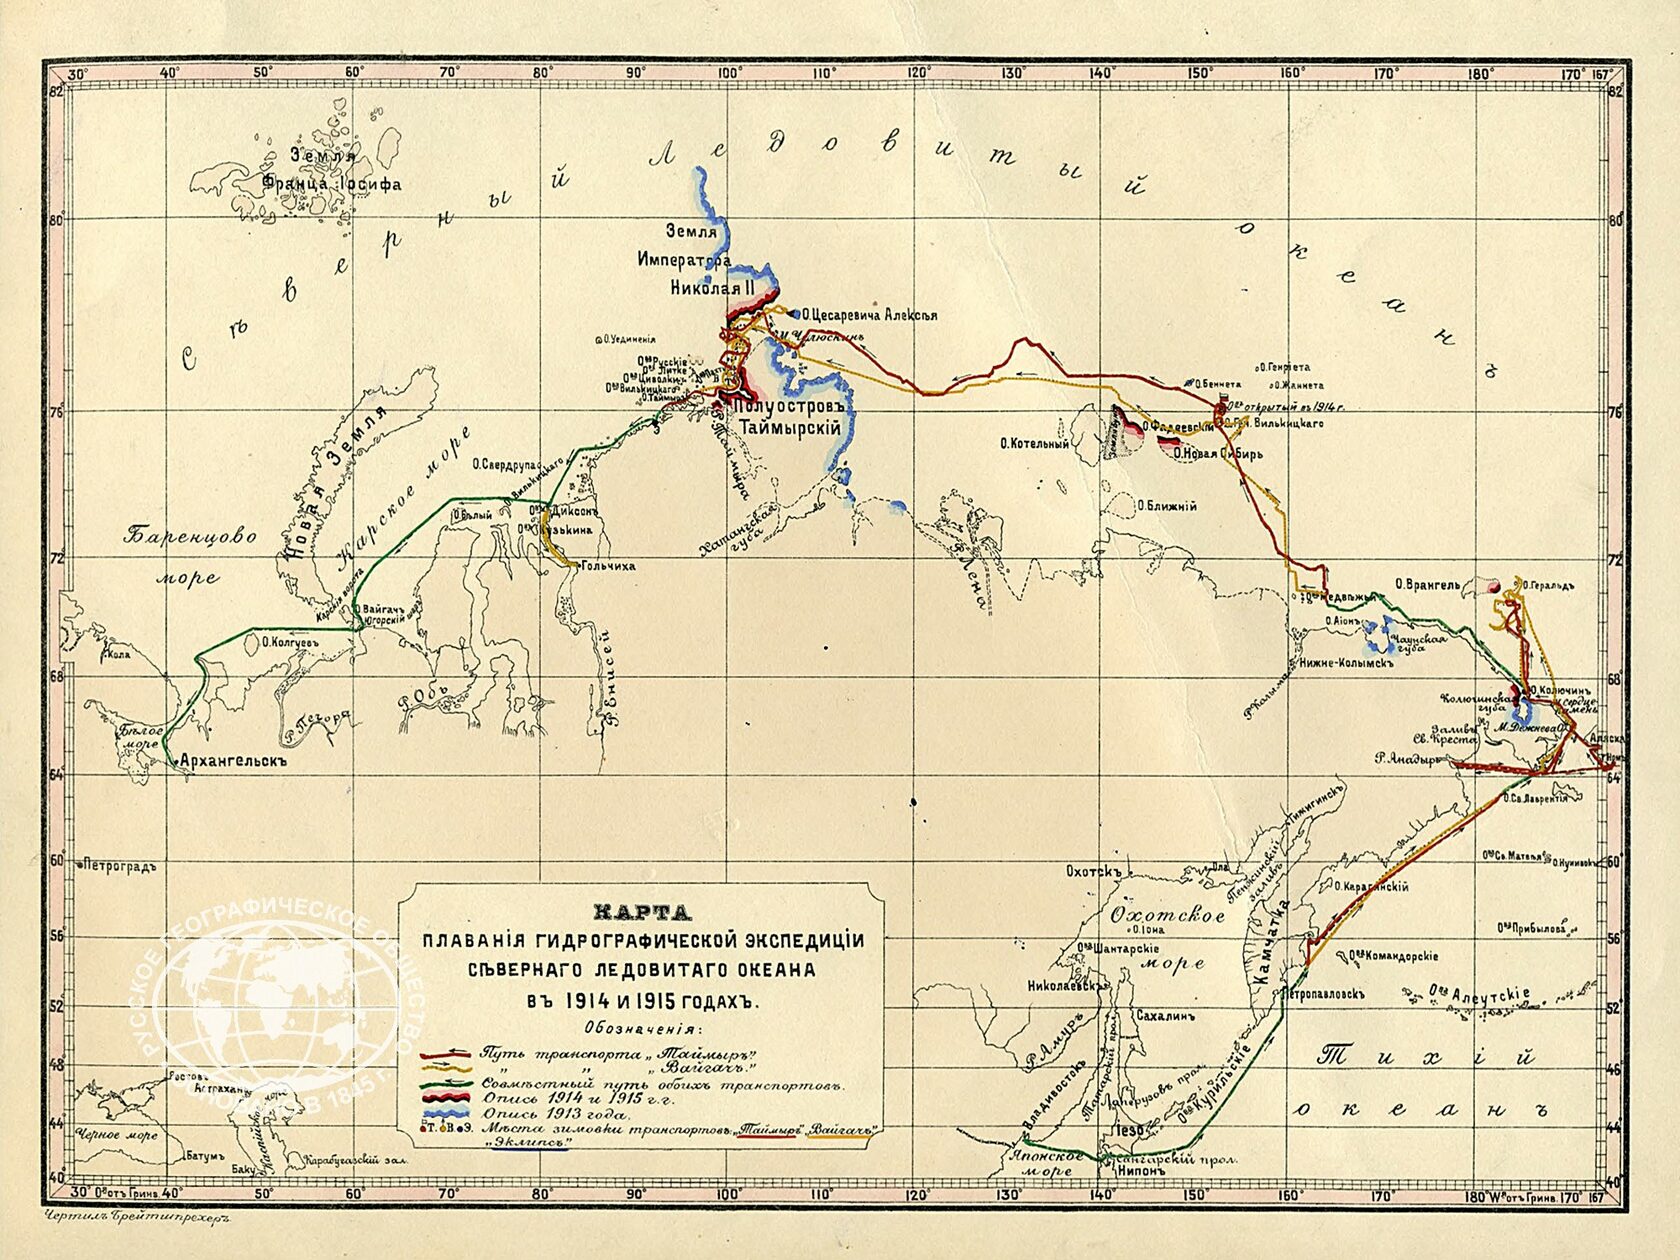 Гидрографическая Экспедиция Северного Ледовитого океана 1910-1915